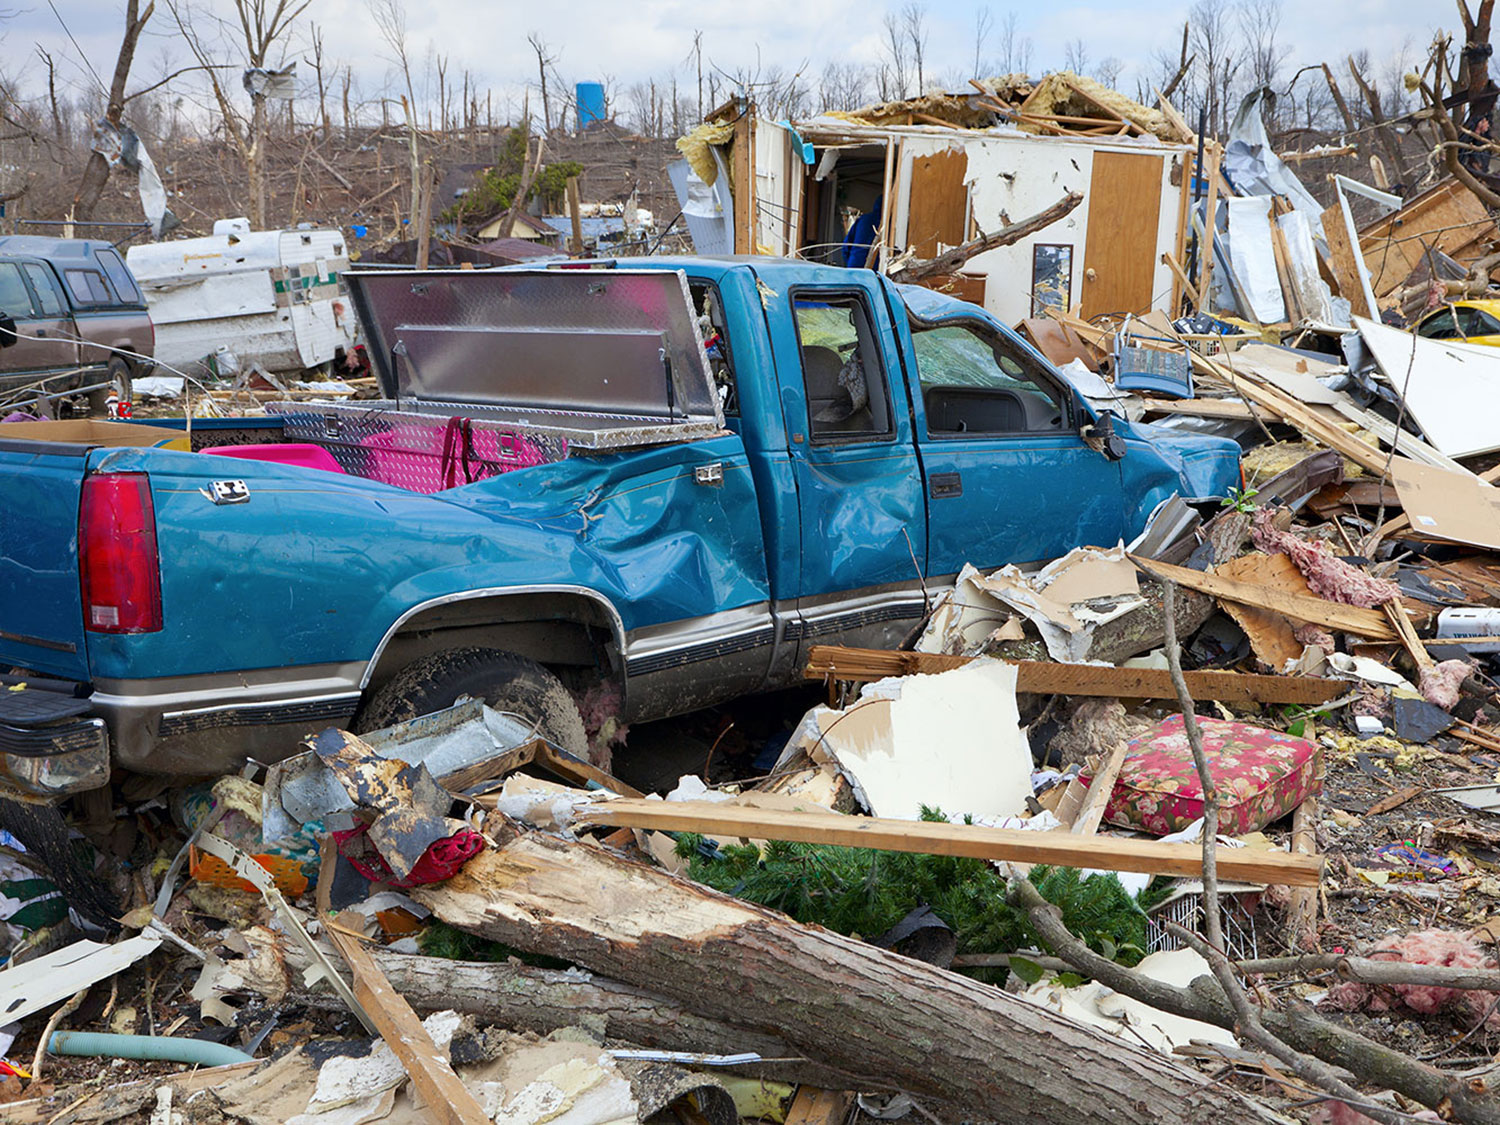 Texas recibe más tornados que cualquier otro estado. Cuando un tornado se avecina, su única prioridad debe ser llegar a un lugar seguro. Hay varios pasos que puede tomar con anticipación para preparar su vivienda contra estas peligrosas tormentas.